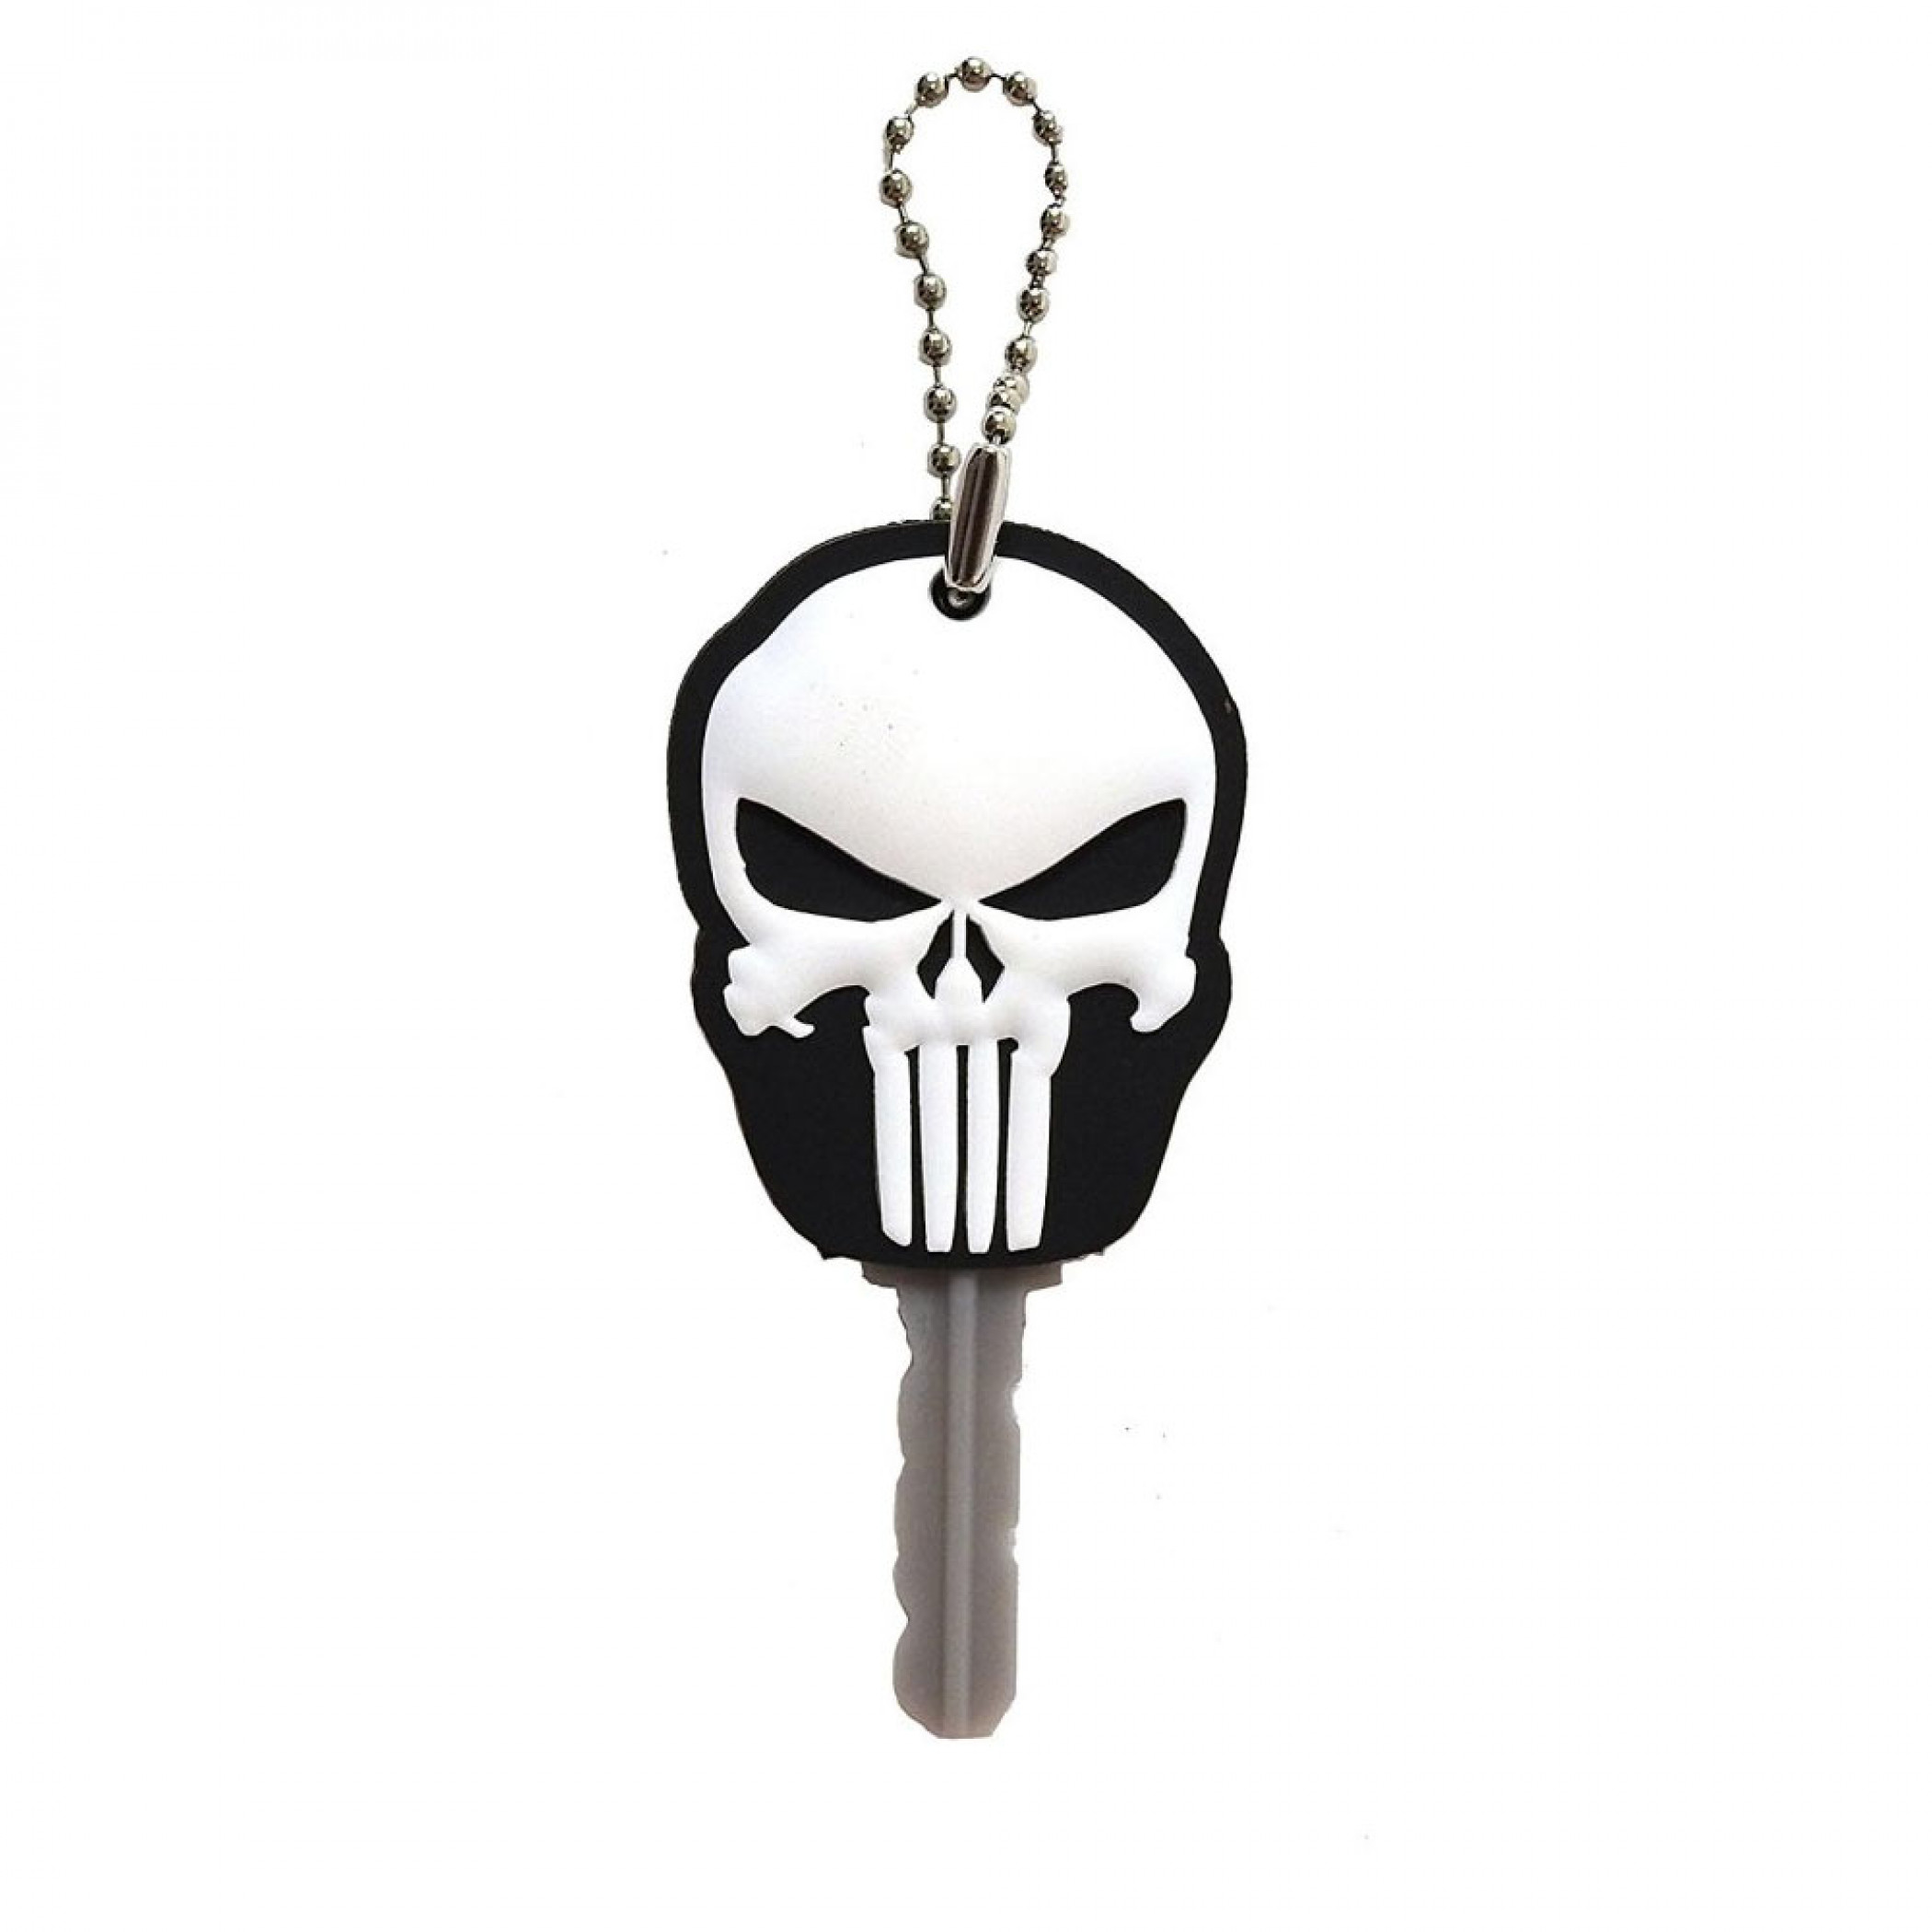 Punisher Key Holder